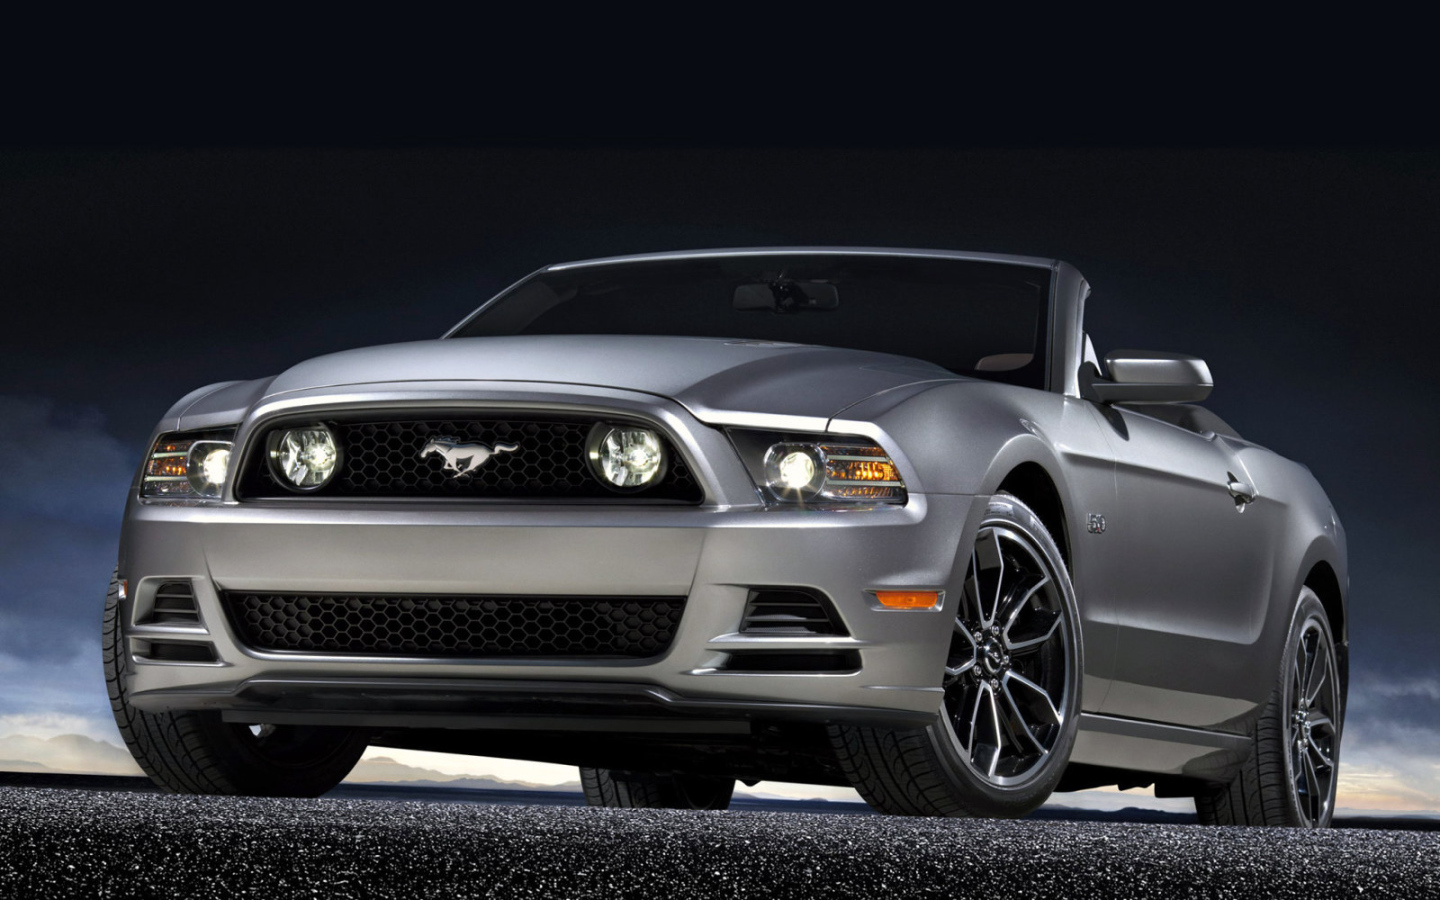 Красивый автомобиль Mustang 2014 года